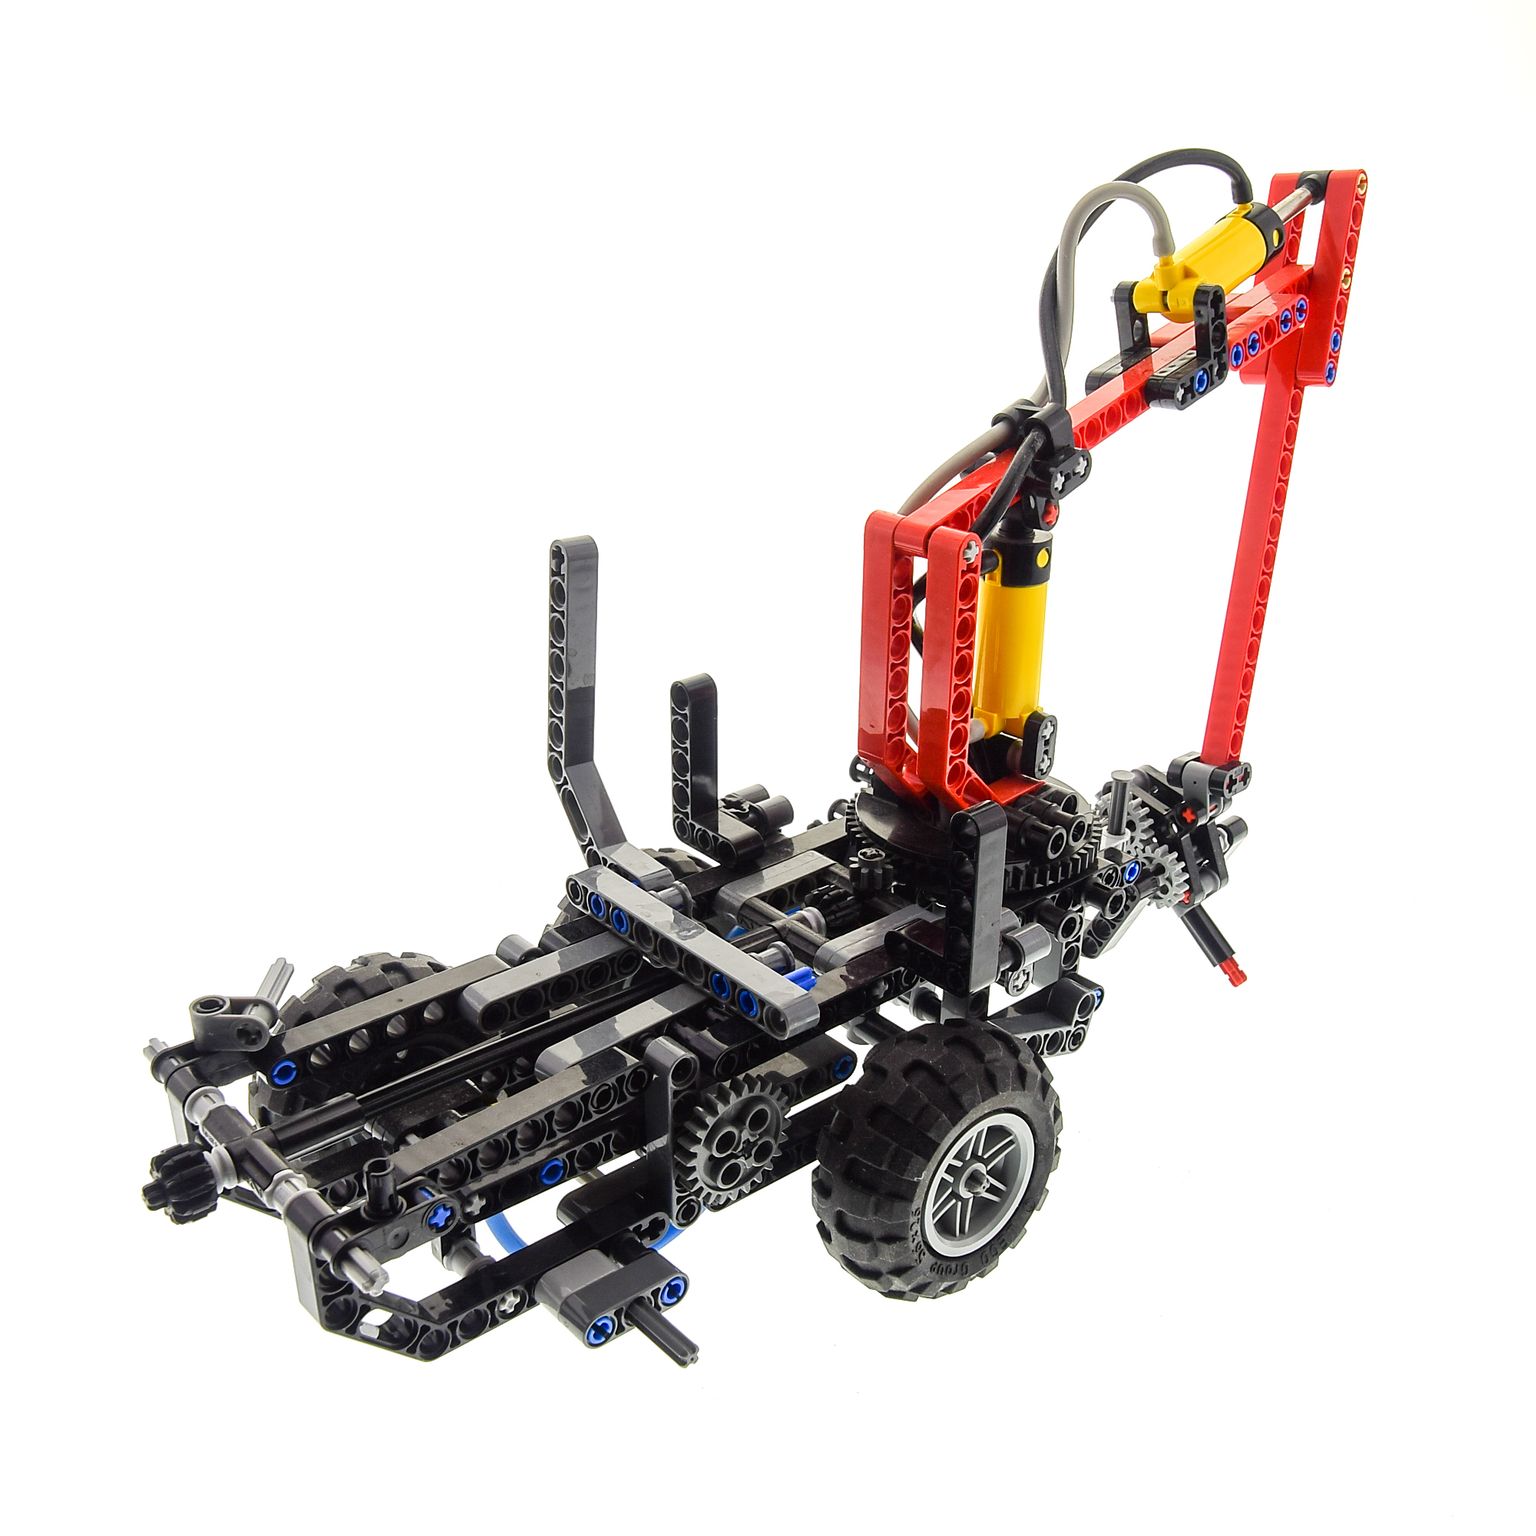 1 x Lego Technic Set Modell Nr. 8049 Anhänger mit Kran für